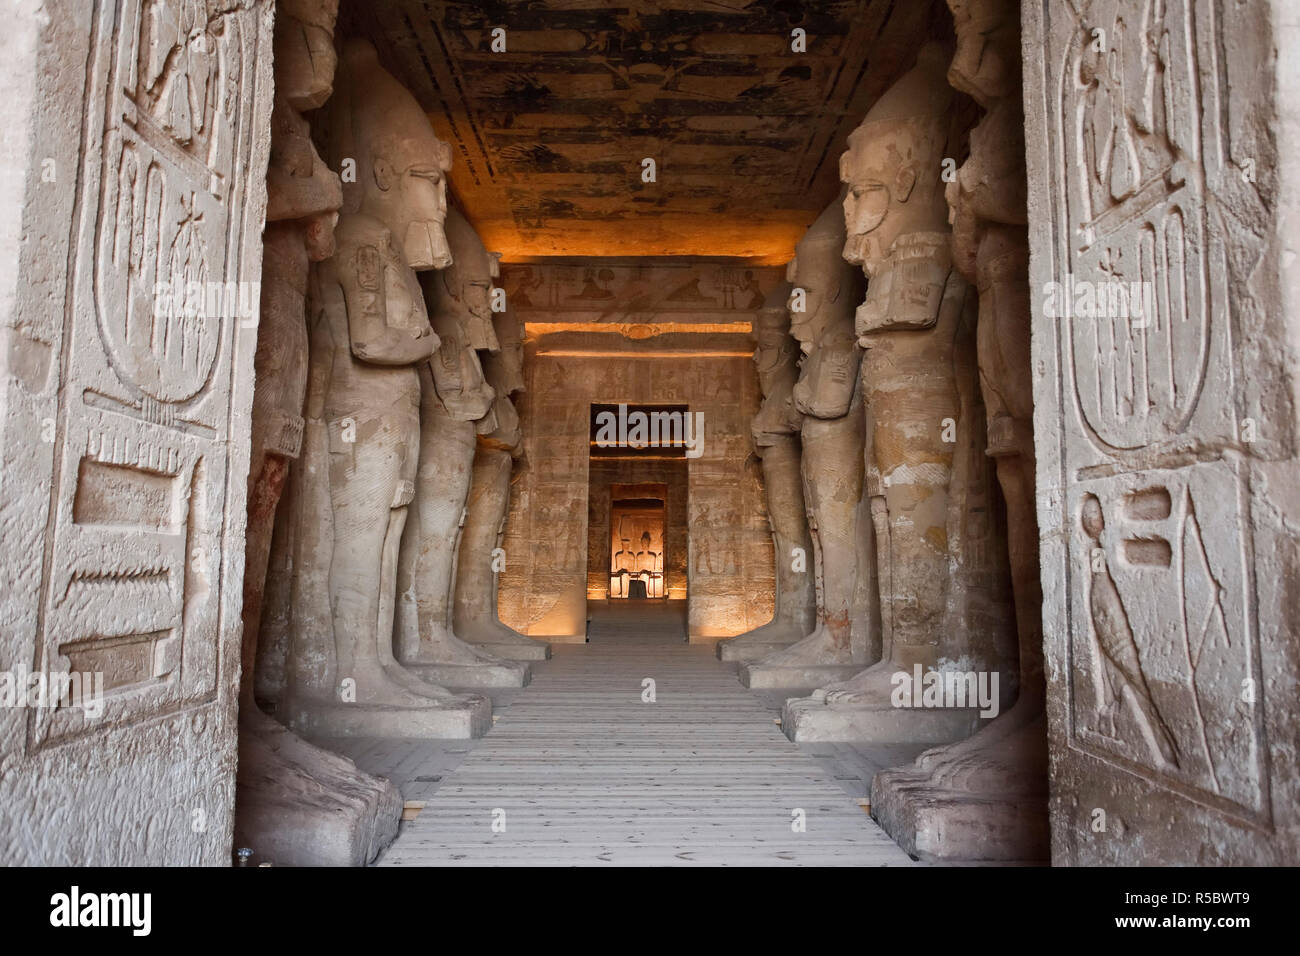 L'Egypte, Abu Simbel, statues et Temple de Ramsès II, chambre principale Banque D'Images